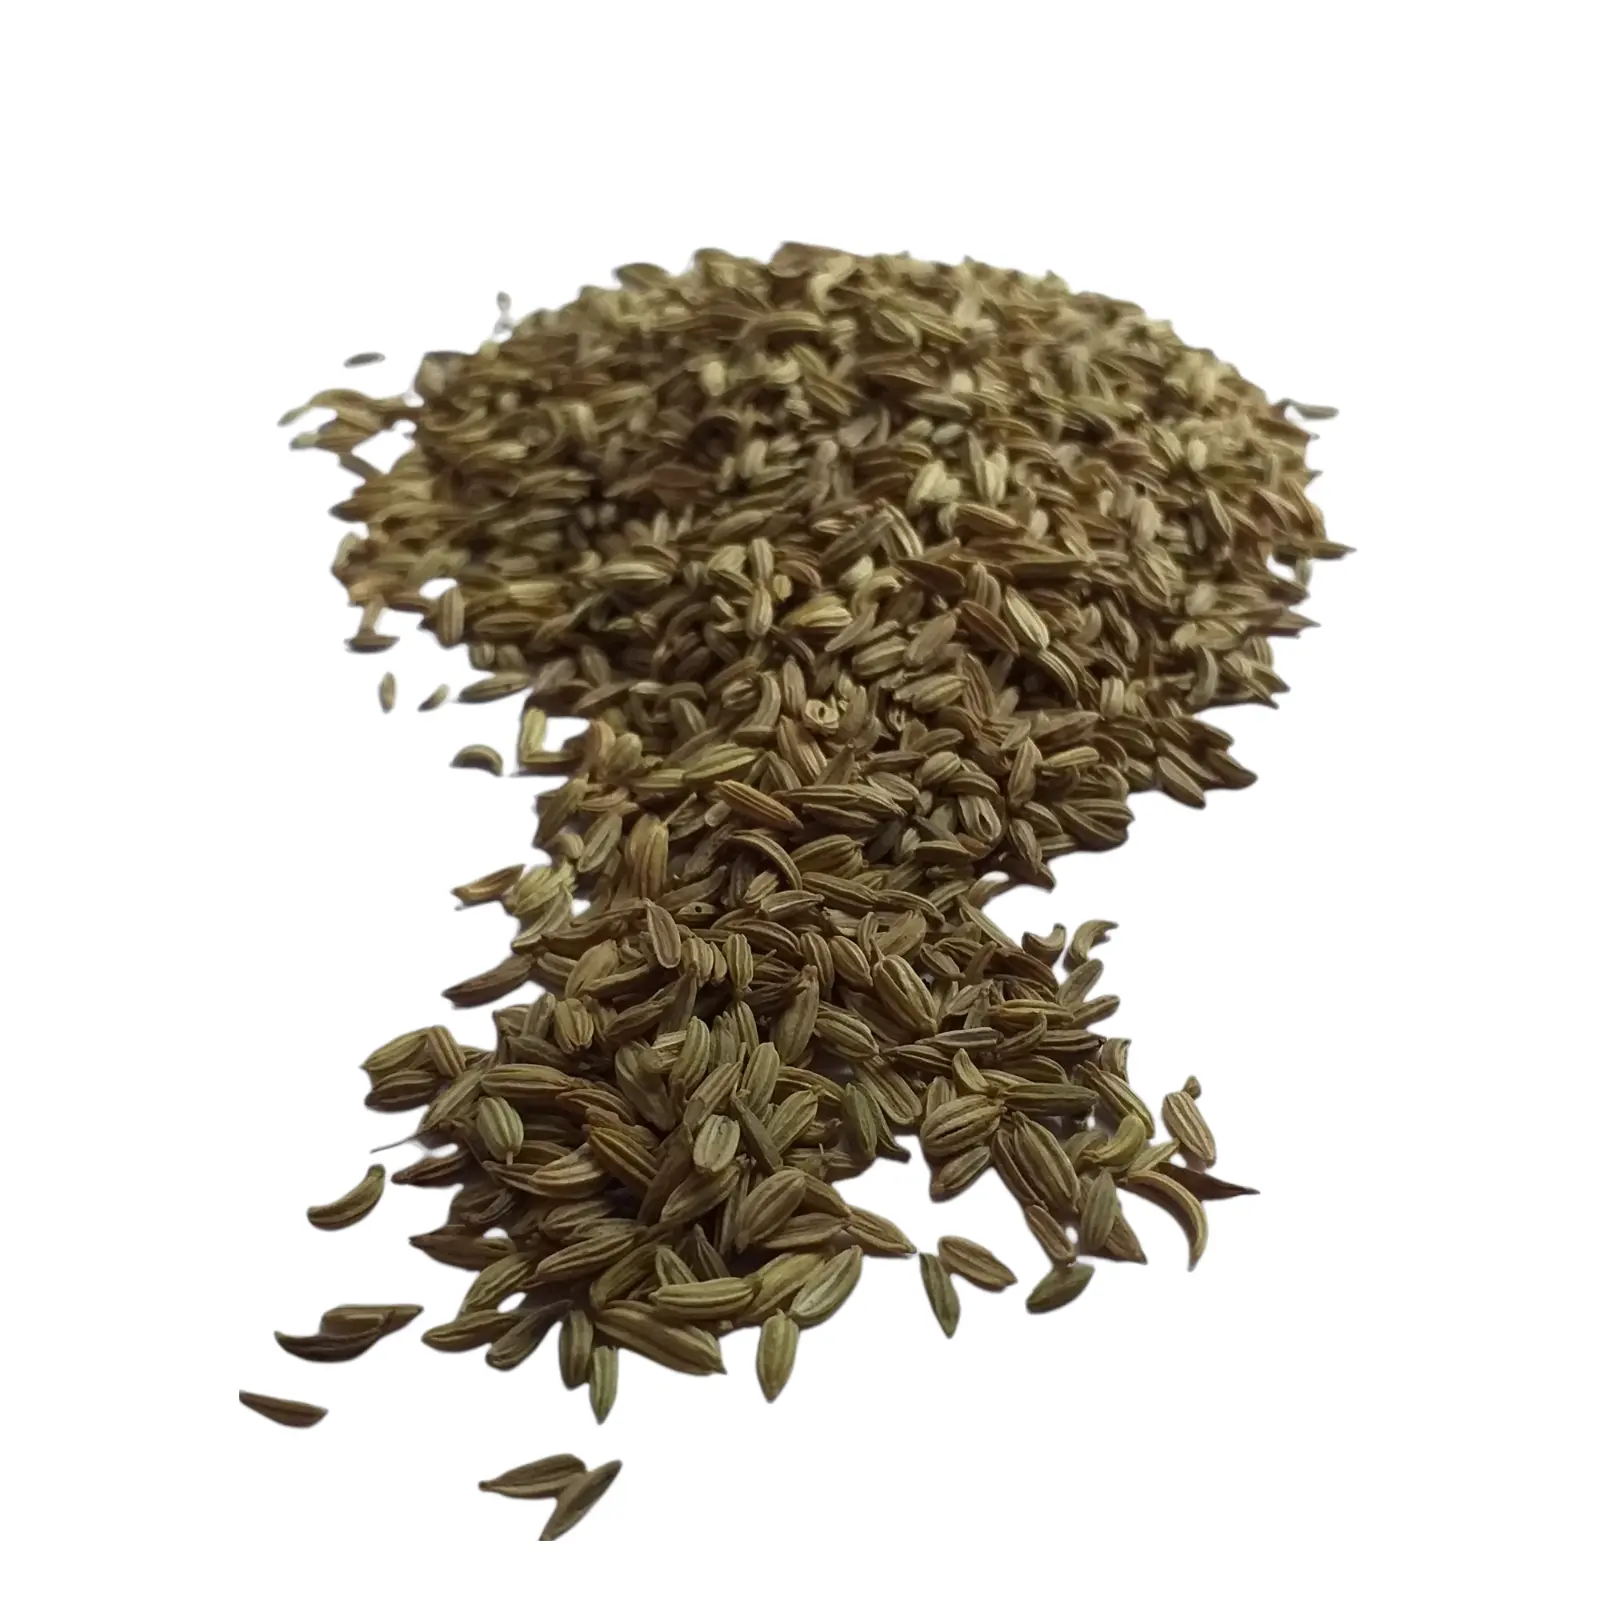 100% शुद्ध सूखे सौंफ के बीज का अर्क पाउडर, खाना पकाने के लिए प्राकृतिक रूप से संसाधित हरे रंग का सौंफ के बीज का अर्क पाउडर